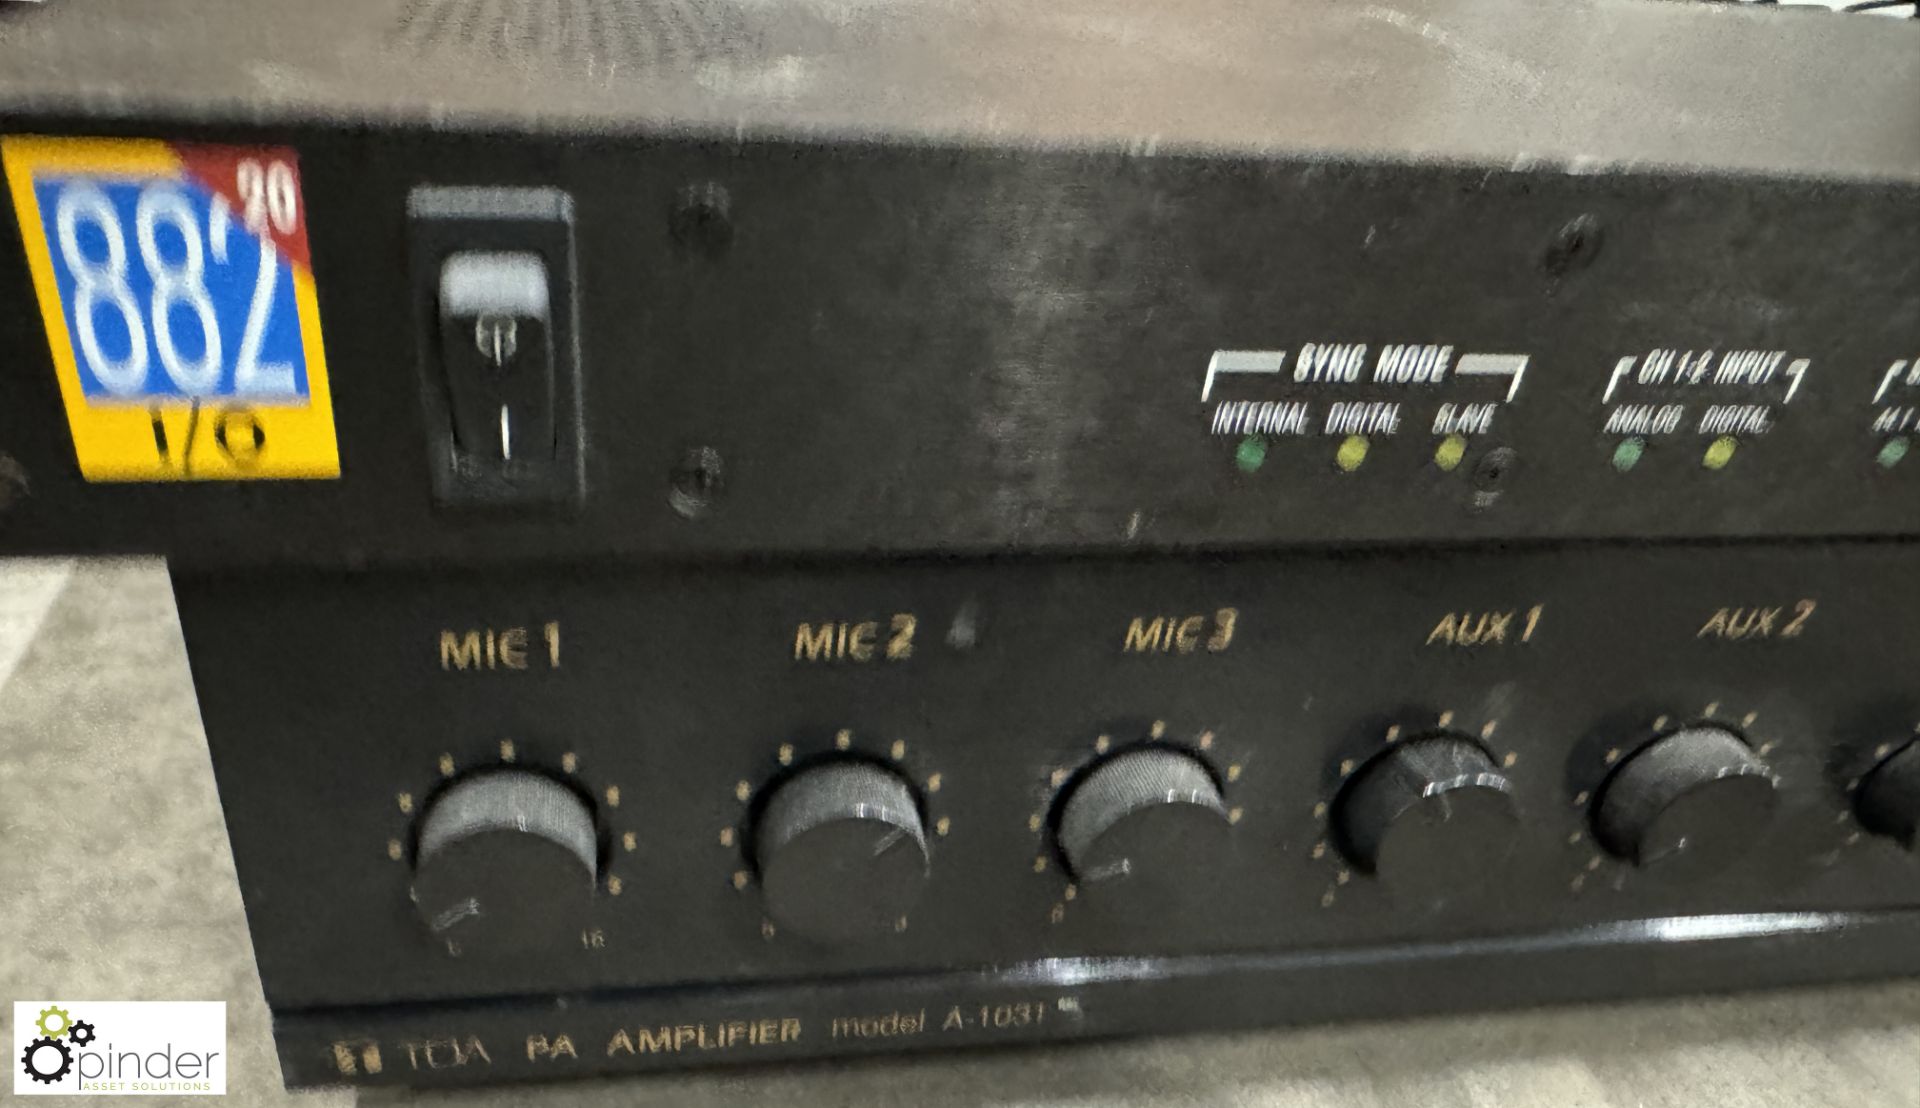 Digidesign Sampler and TOA PA Amplifier - Bild 3 aus 4